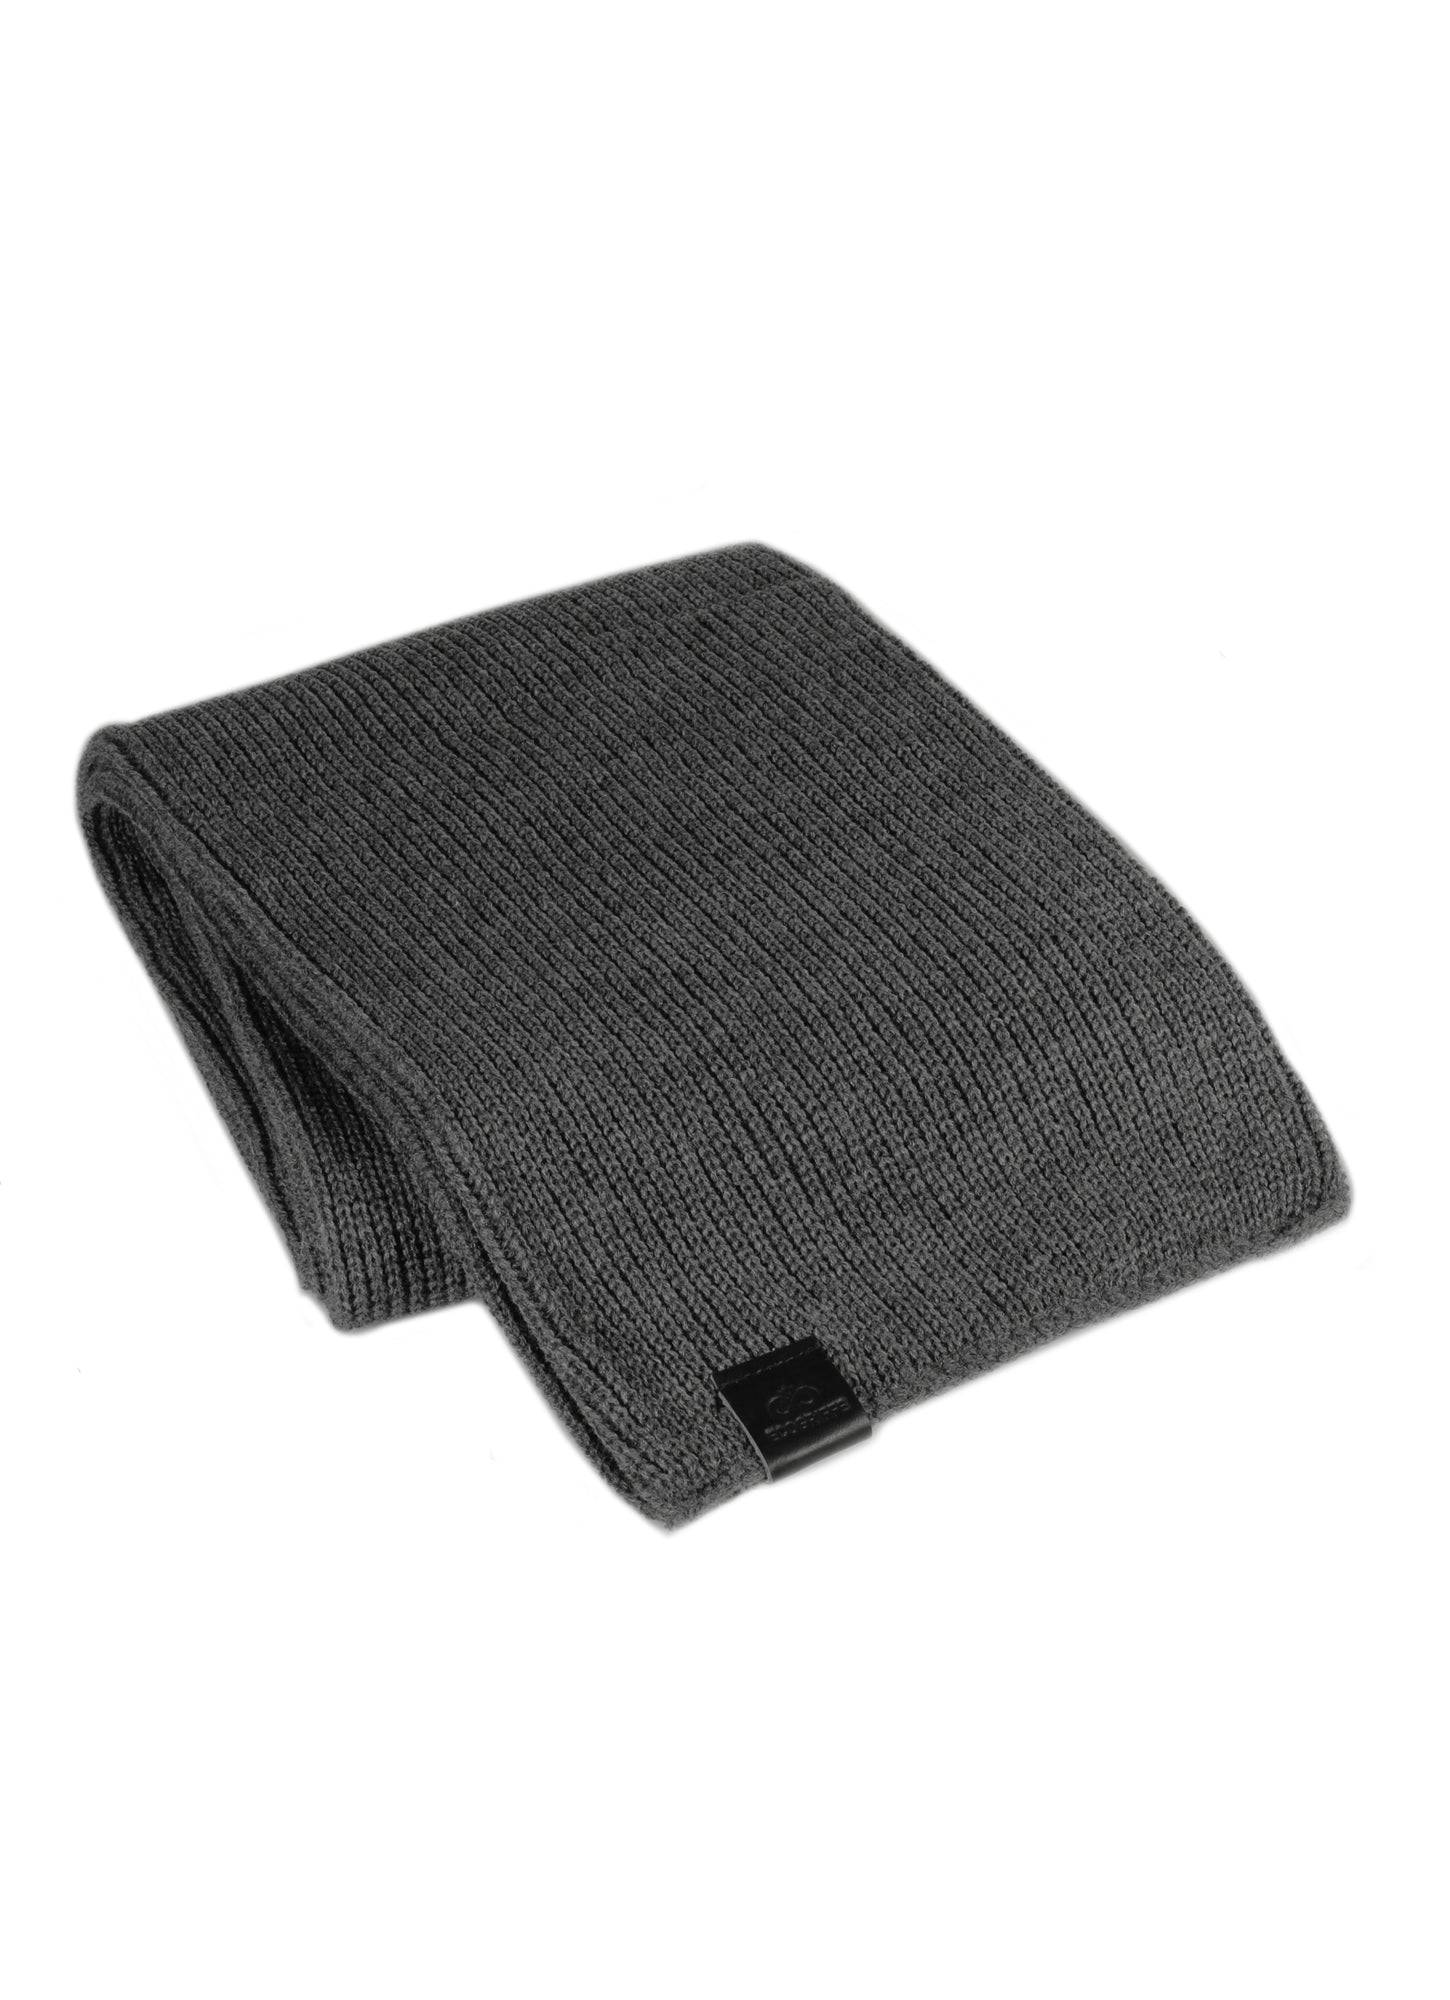 ecogriffe-foulard-charcoal-etiquette-noir